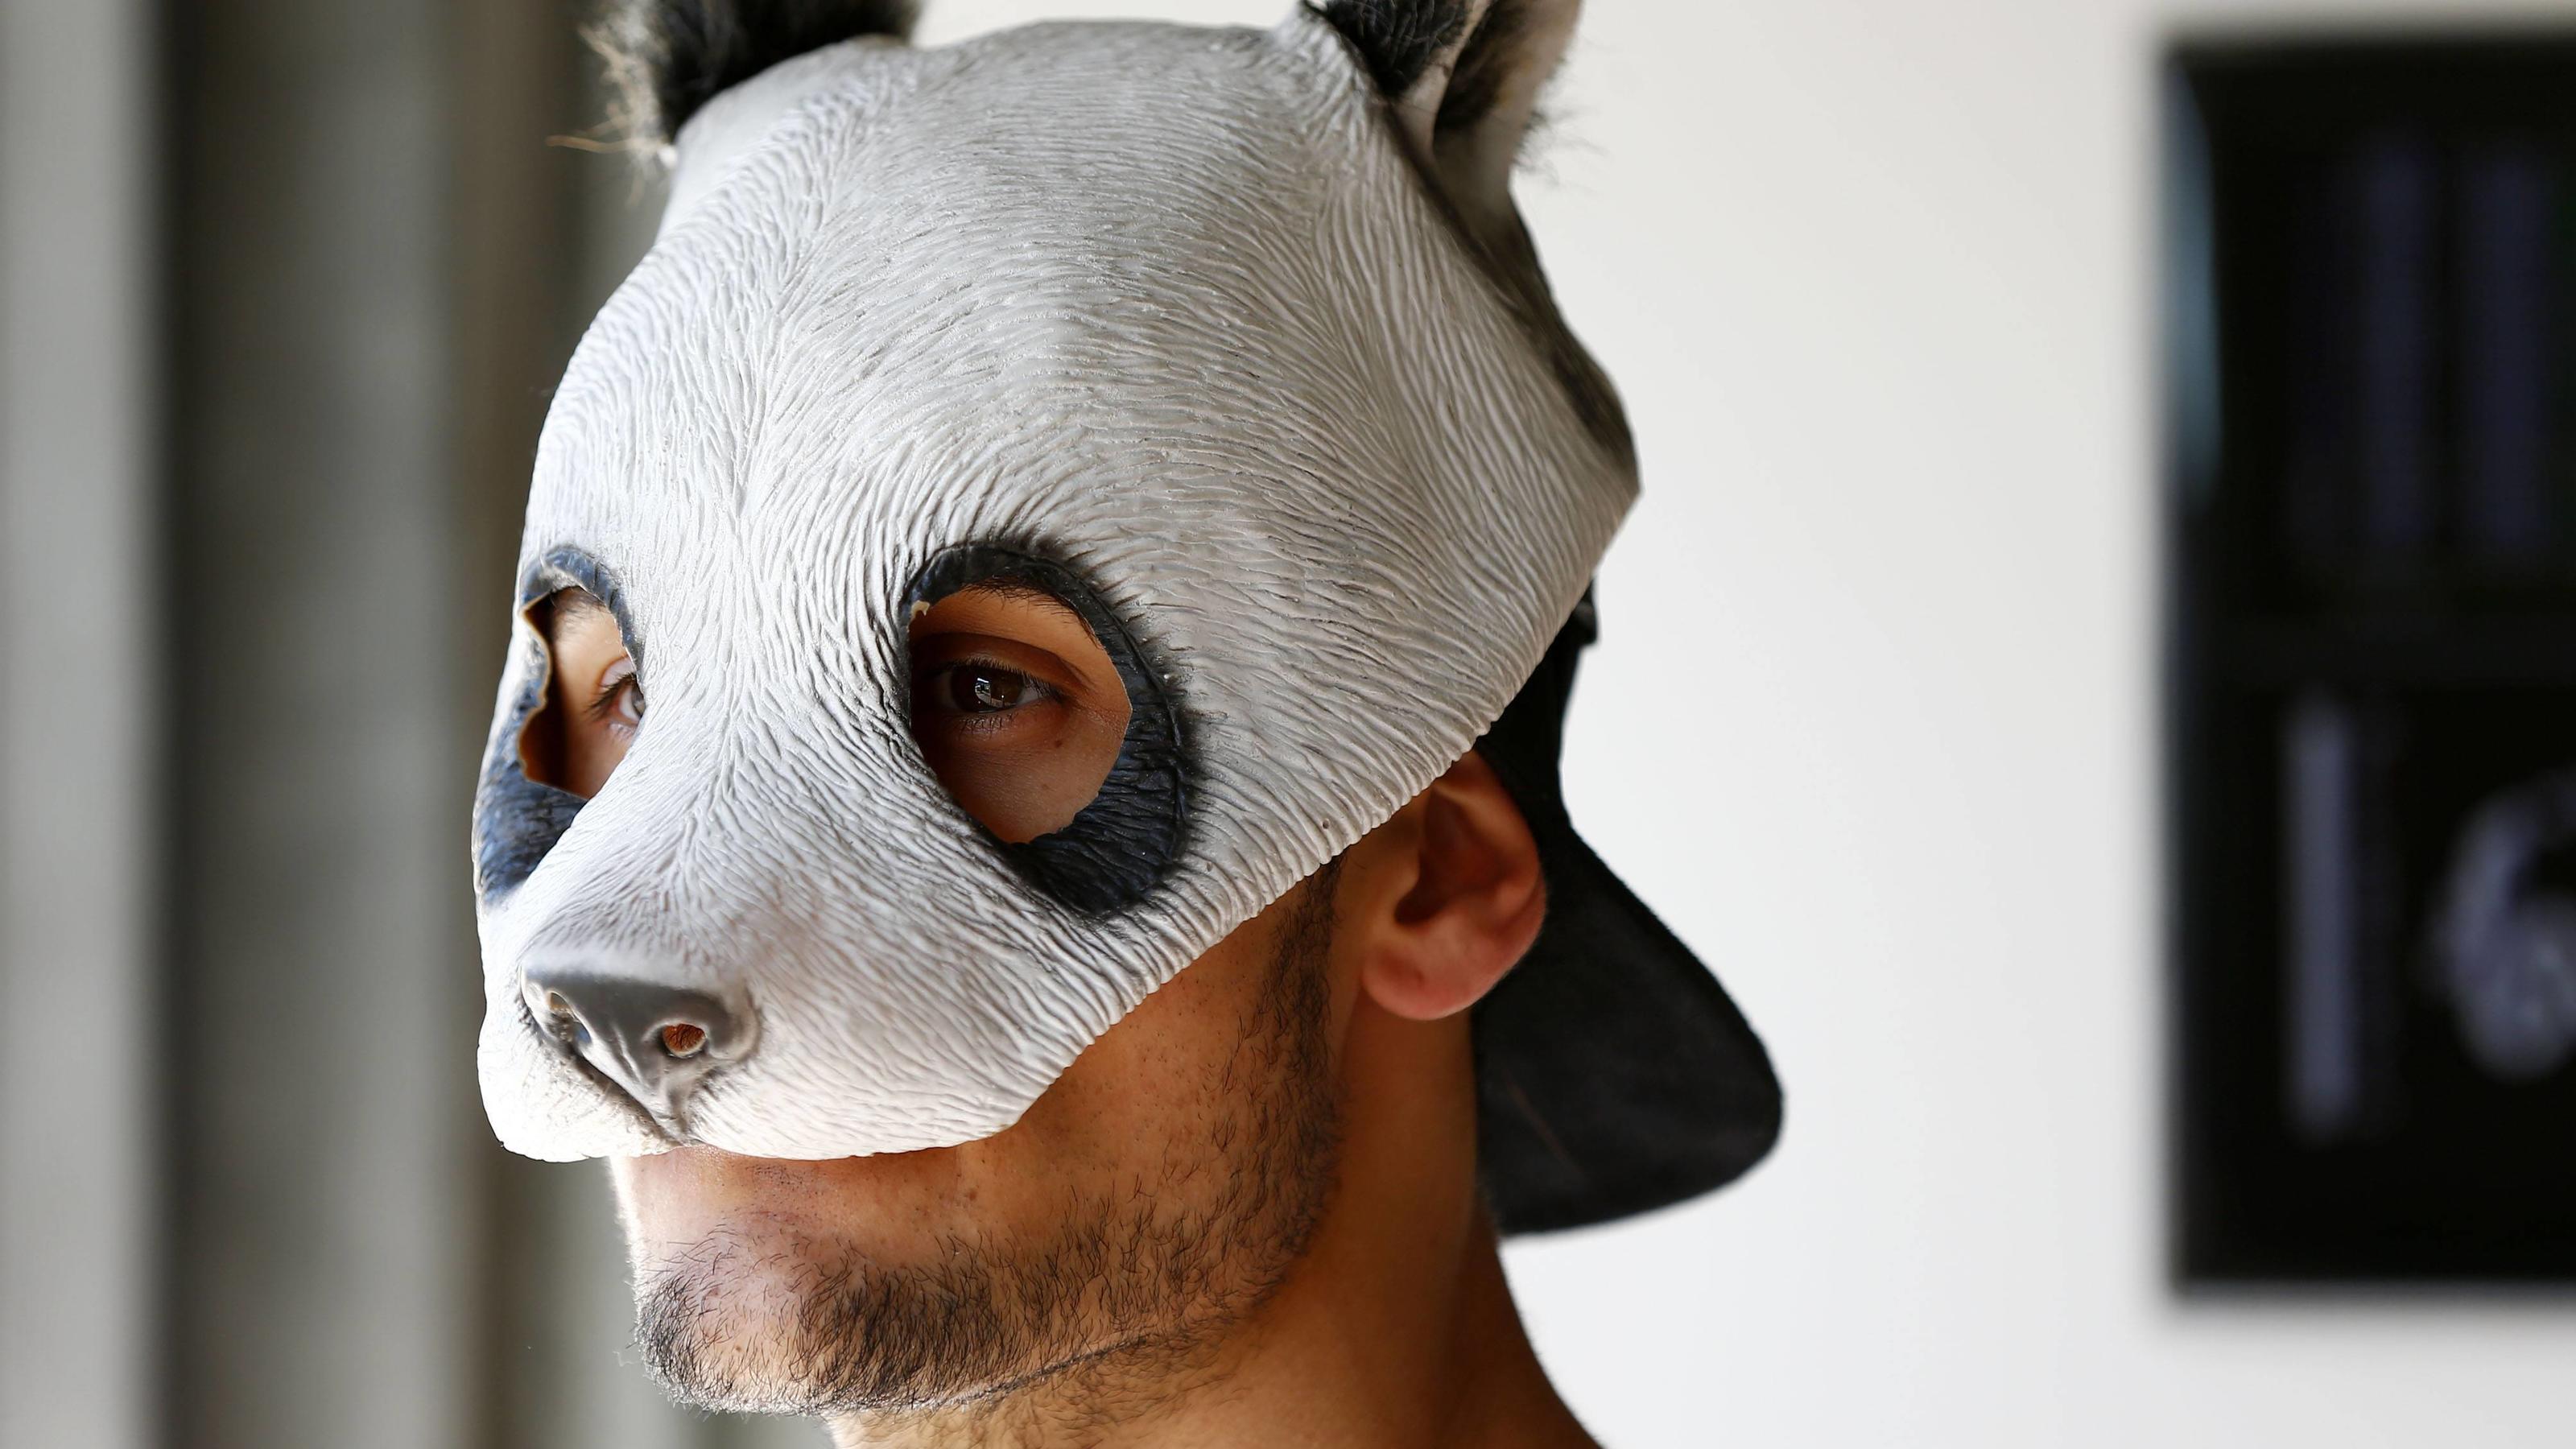 https://aisvip-a.akamaihd.net/masters/1334968/3200x1800/zum-30-geburtstag-des-rappers-wir-zeigen-cro-ohne-panda-maske.jpg